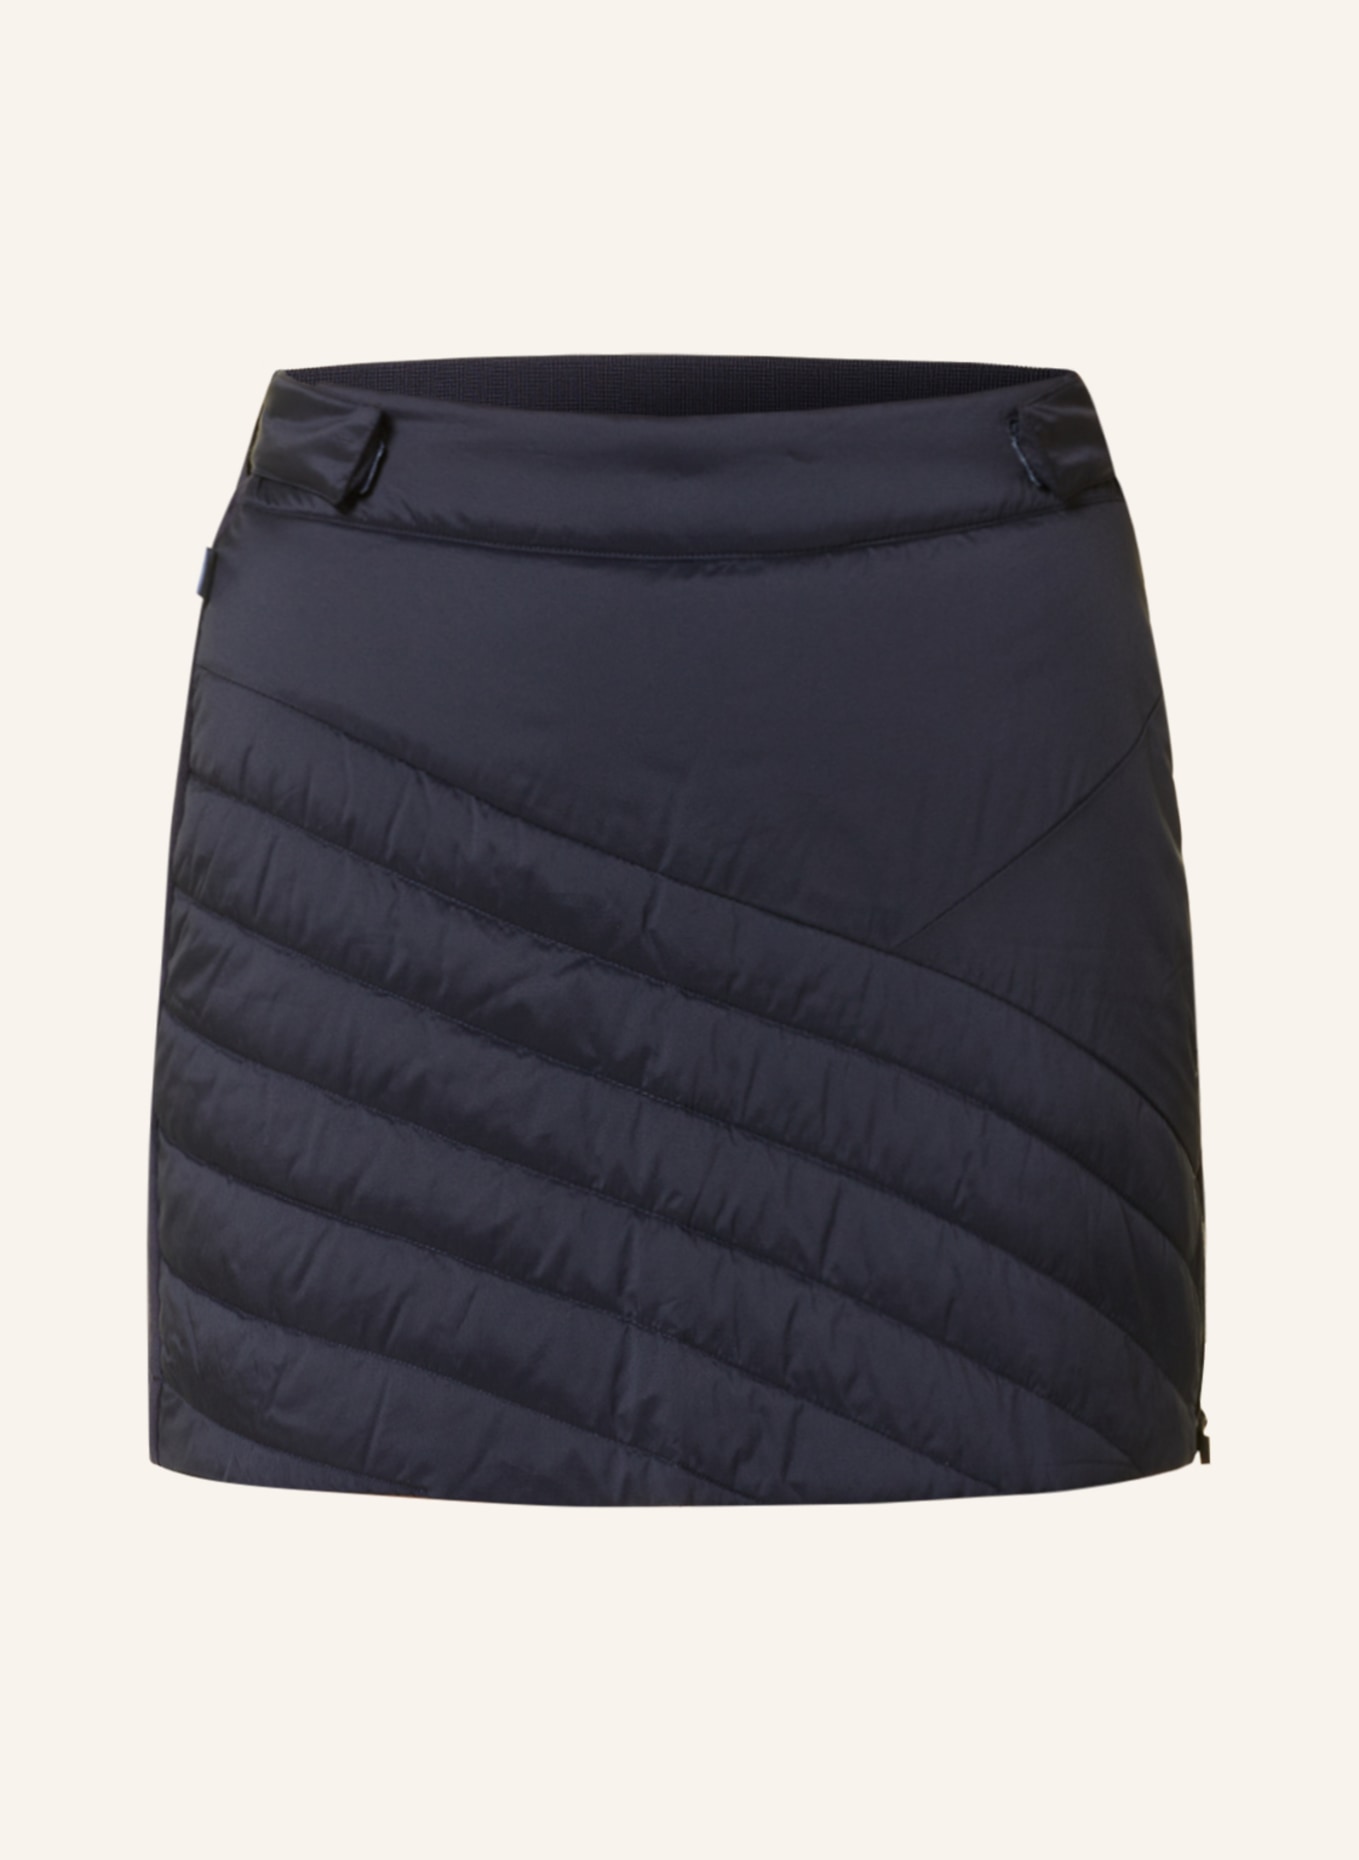 me°ru' Outdoor skirt SUNDERLAND, Color: DARK BLUE (Image 1)